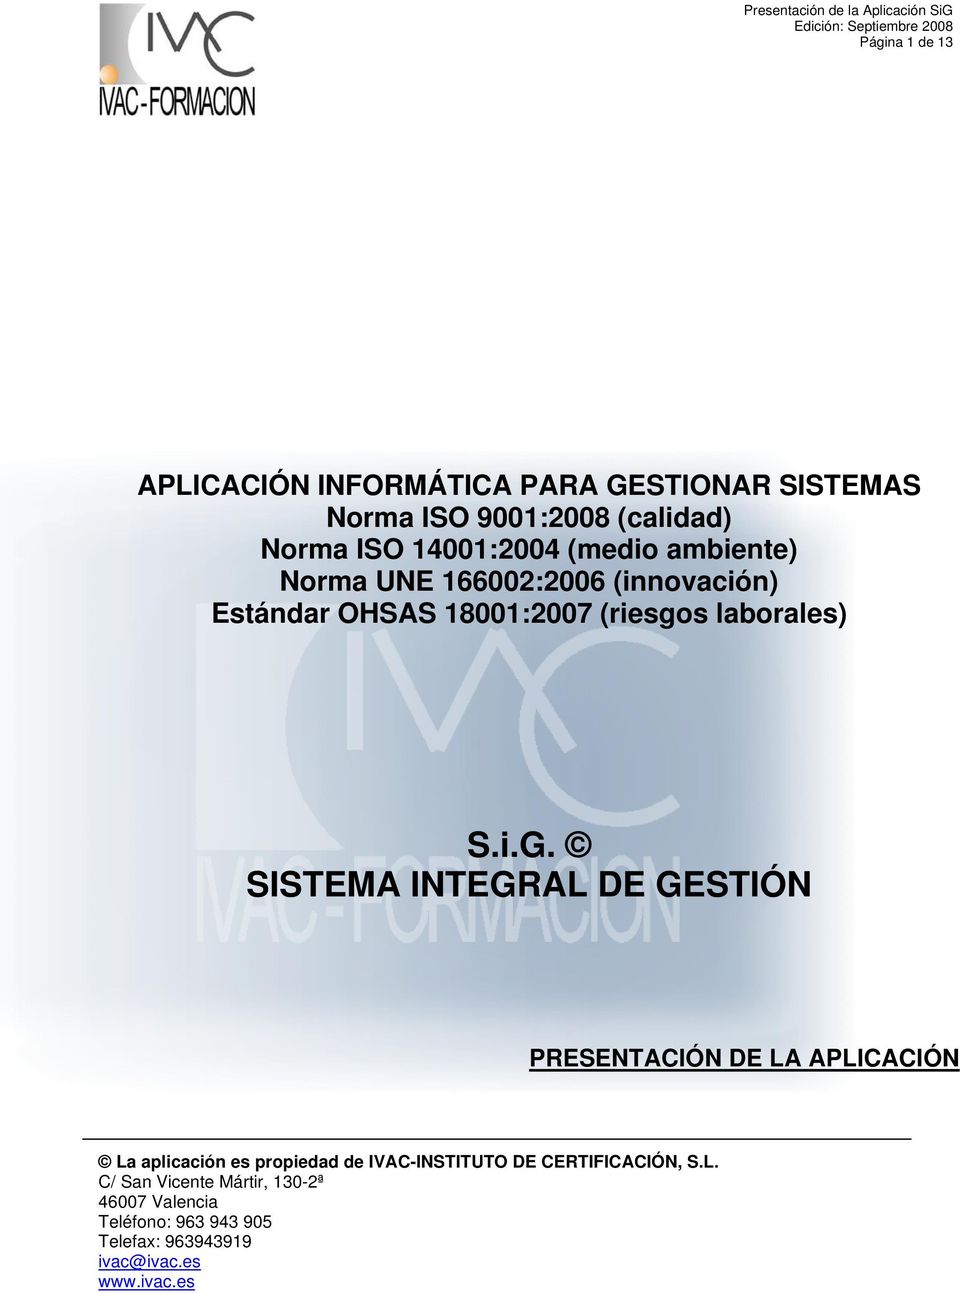 SISTEMA INTEGRAL DE GESTIÓN PRESENTACIÓN DE LA APLICACIÓN La aplicación es propiedad de IVAC-INSTITUTO DE